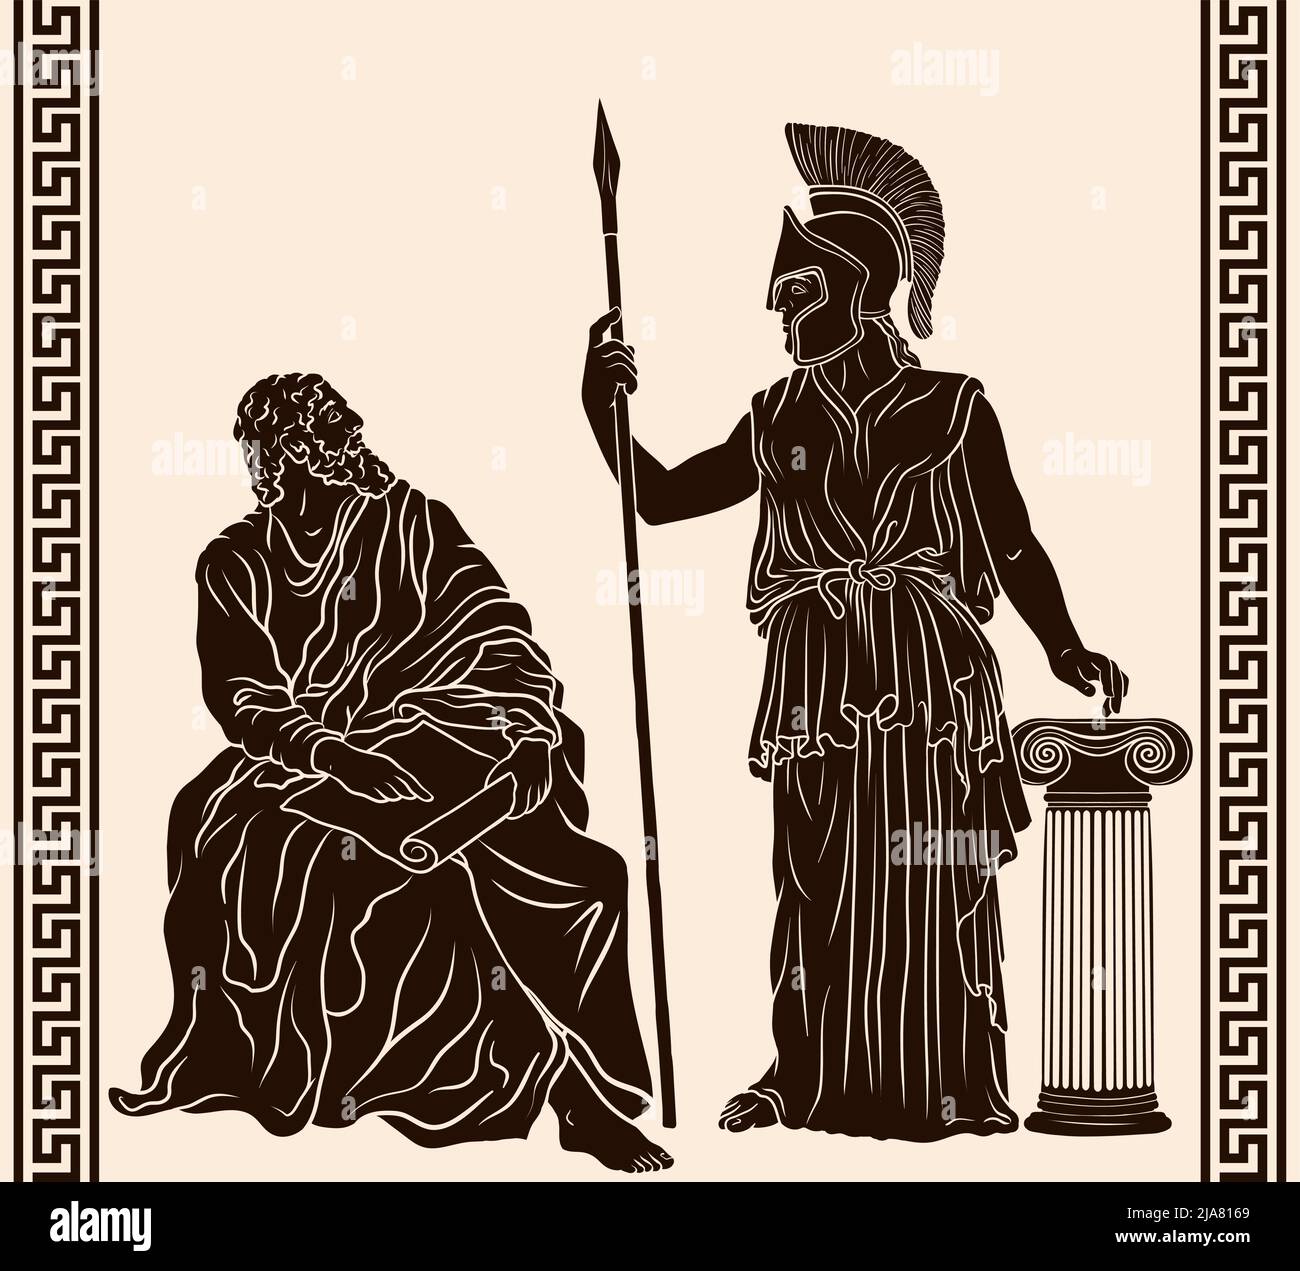 Le philosophe grec ancien sage est assis avec le papyrus dans ses mains et la déesse Pallas Athena dans un casque avec une lance dans sa main se tient à côté de la TH Illustration de Vecteur